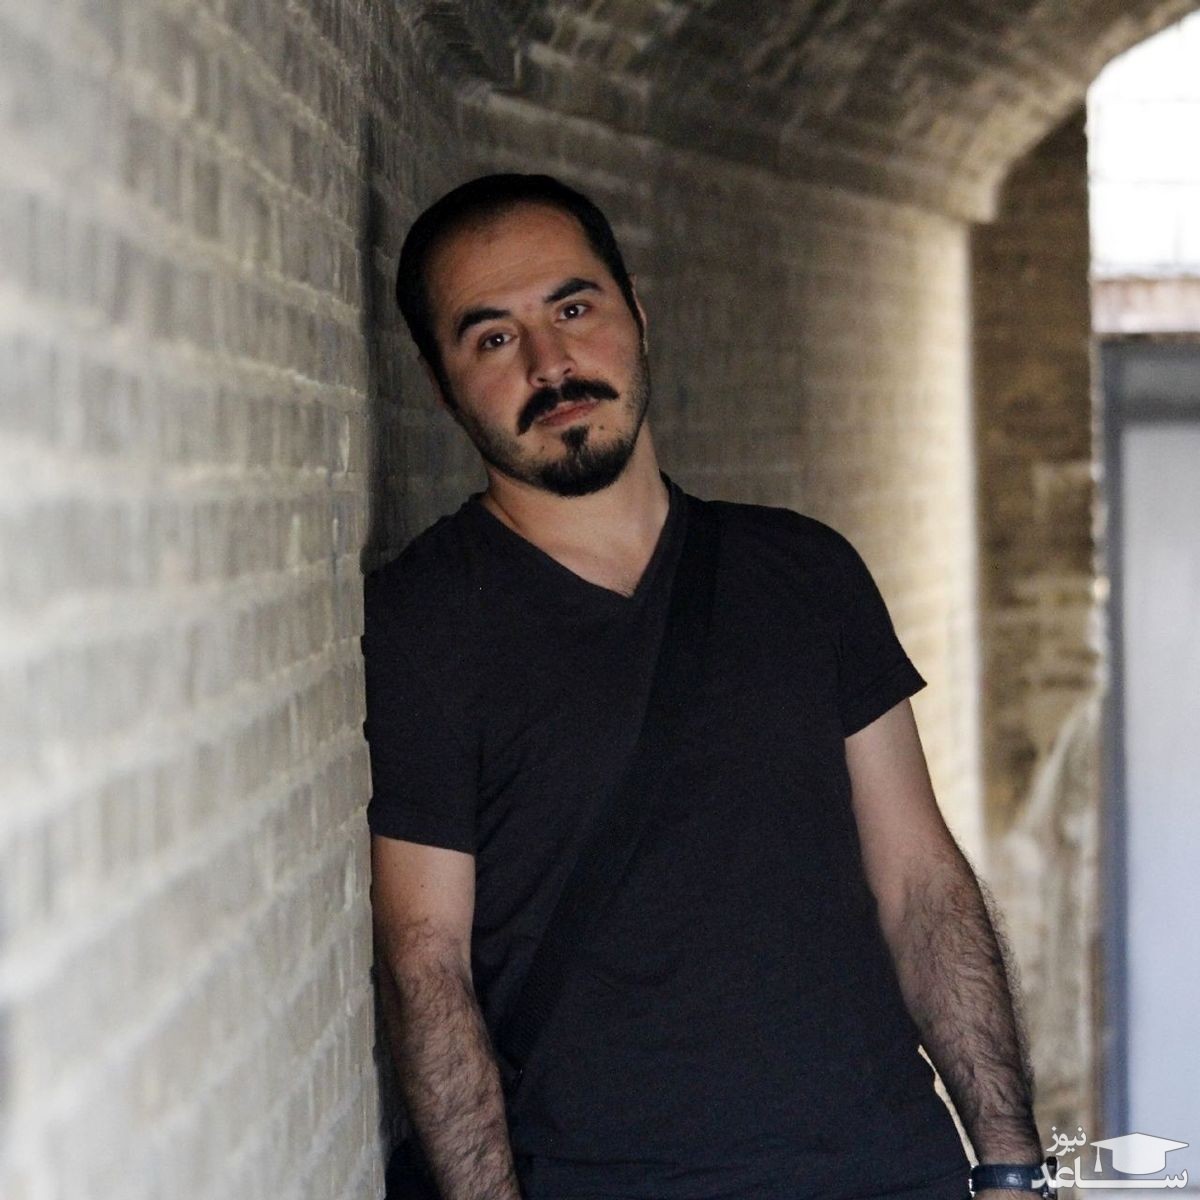 (فیلم) گزارش ویژه صدا و سیما درباره حسین رونقی، شکستن دو پا و اعتصاب غذایش